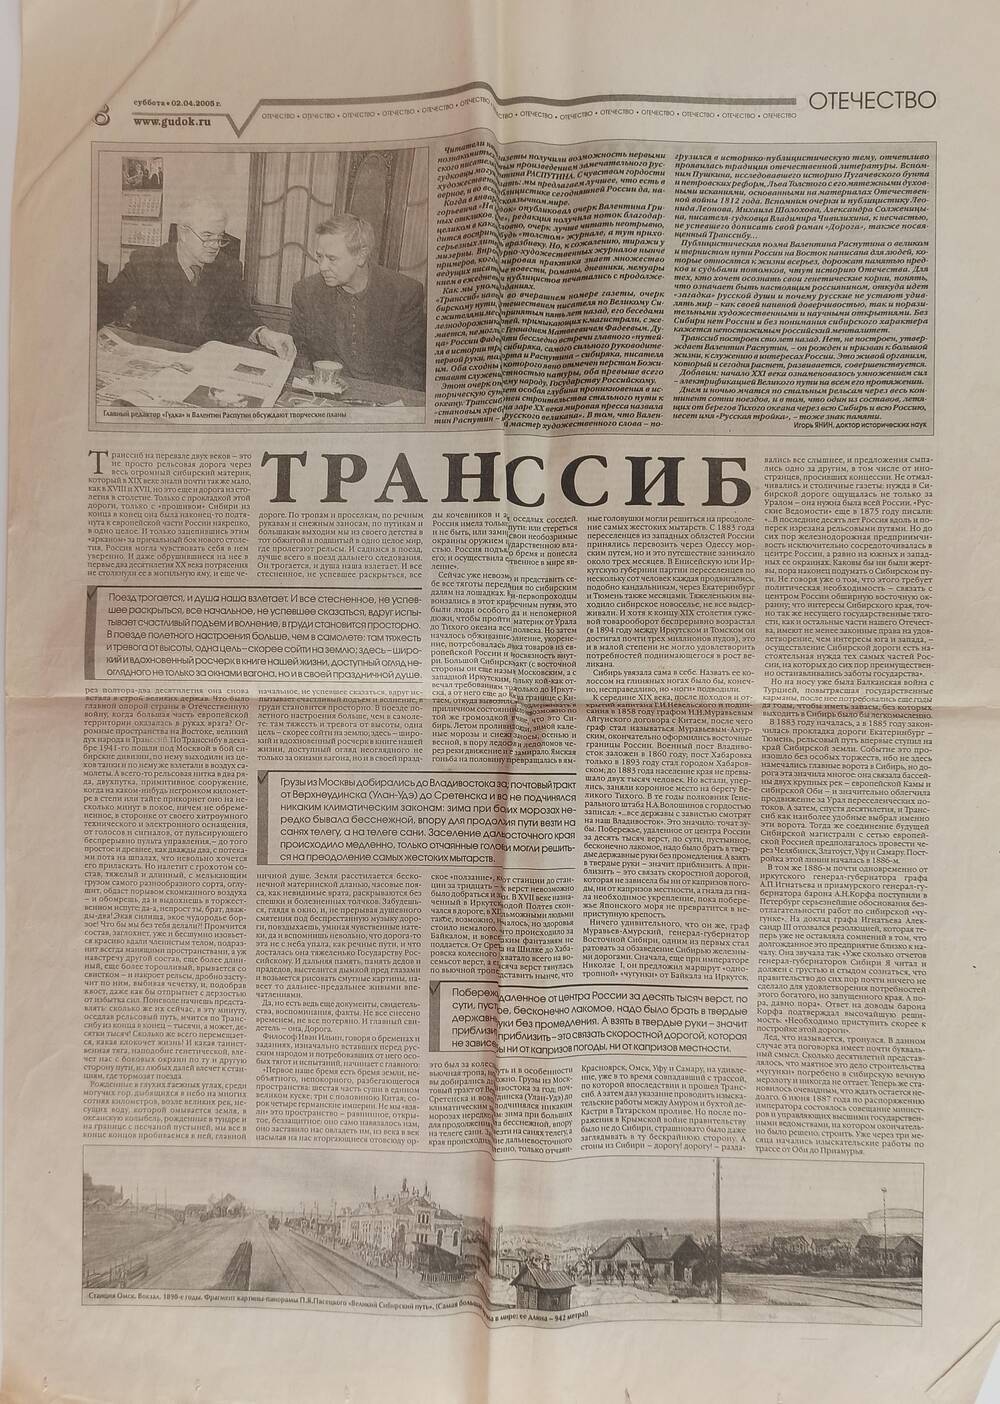 Вырезка из газеты Гудок - статья Транссиб, на 5 - ти листах. 02.04.2005 - 07.04.2005 г.